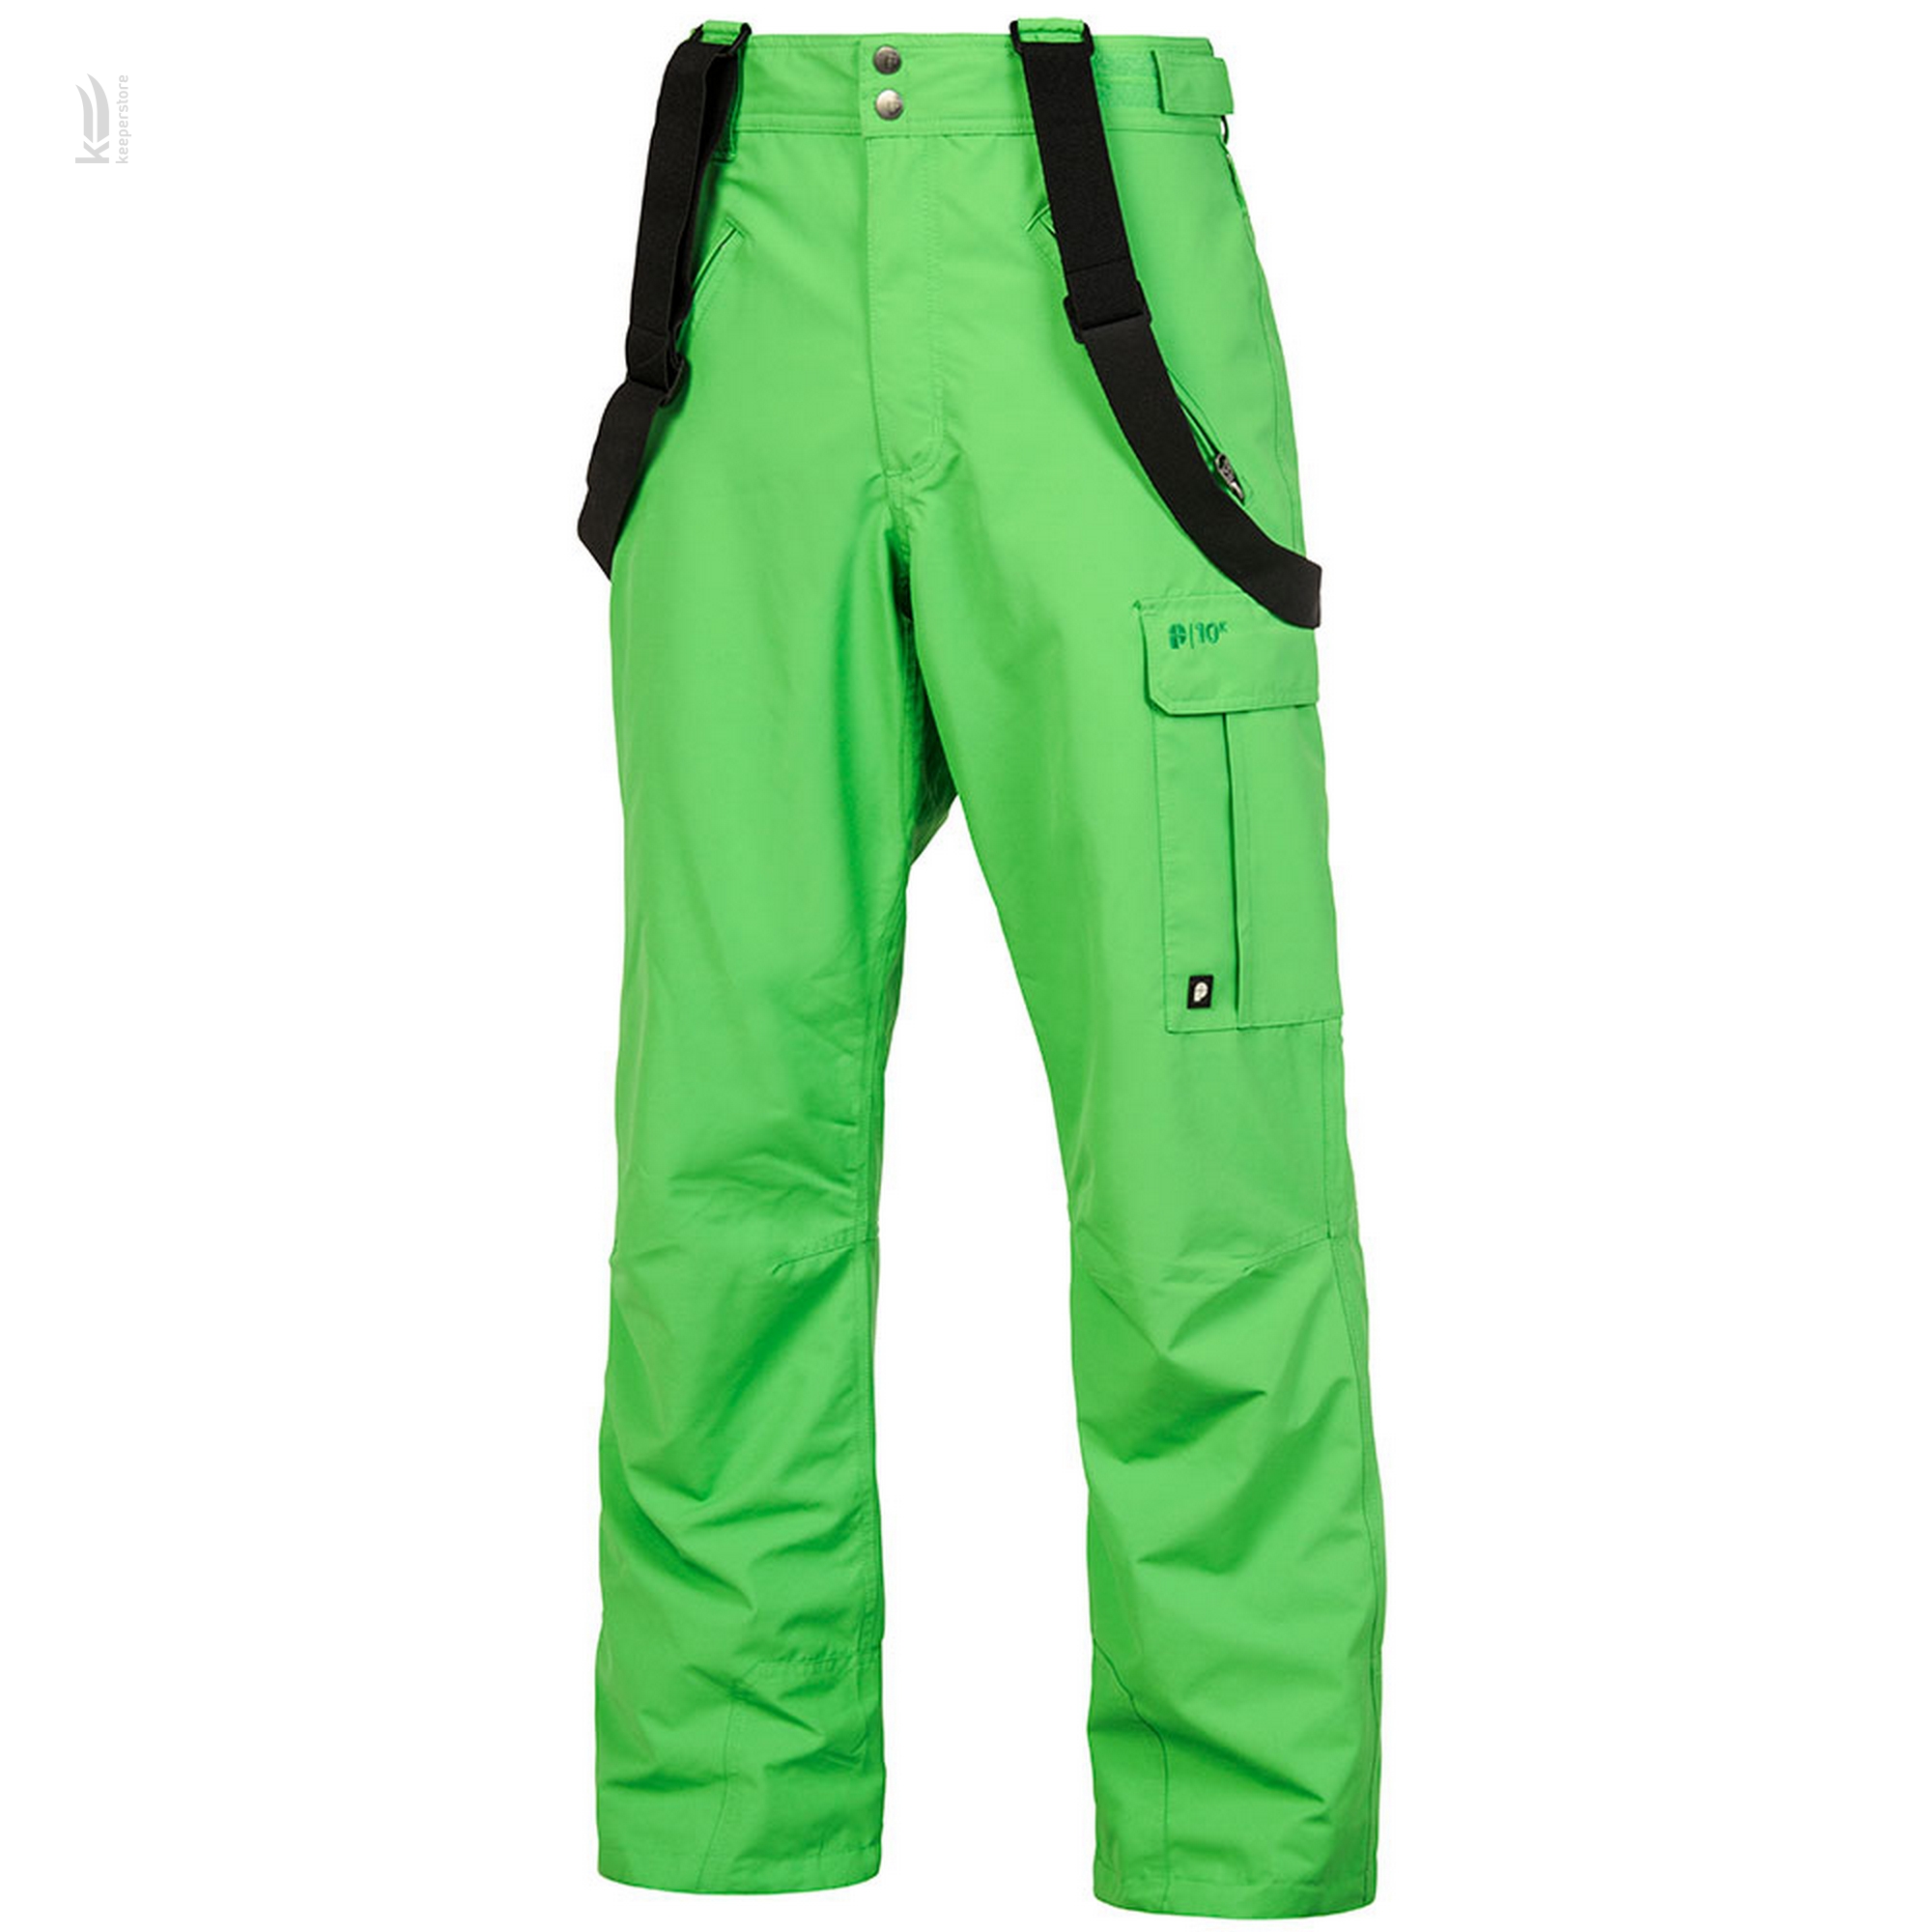 Мужские зимние спортивные штаны Fasc Monarch Green Pants (M)